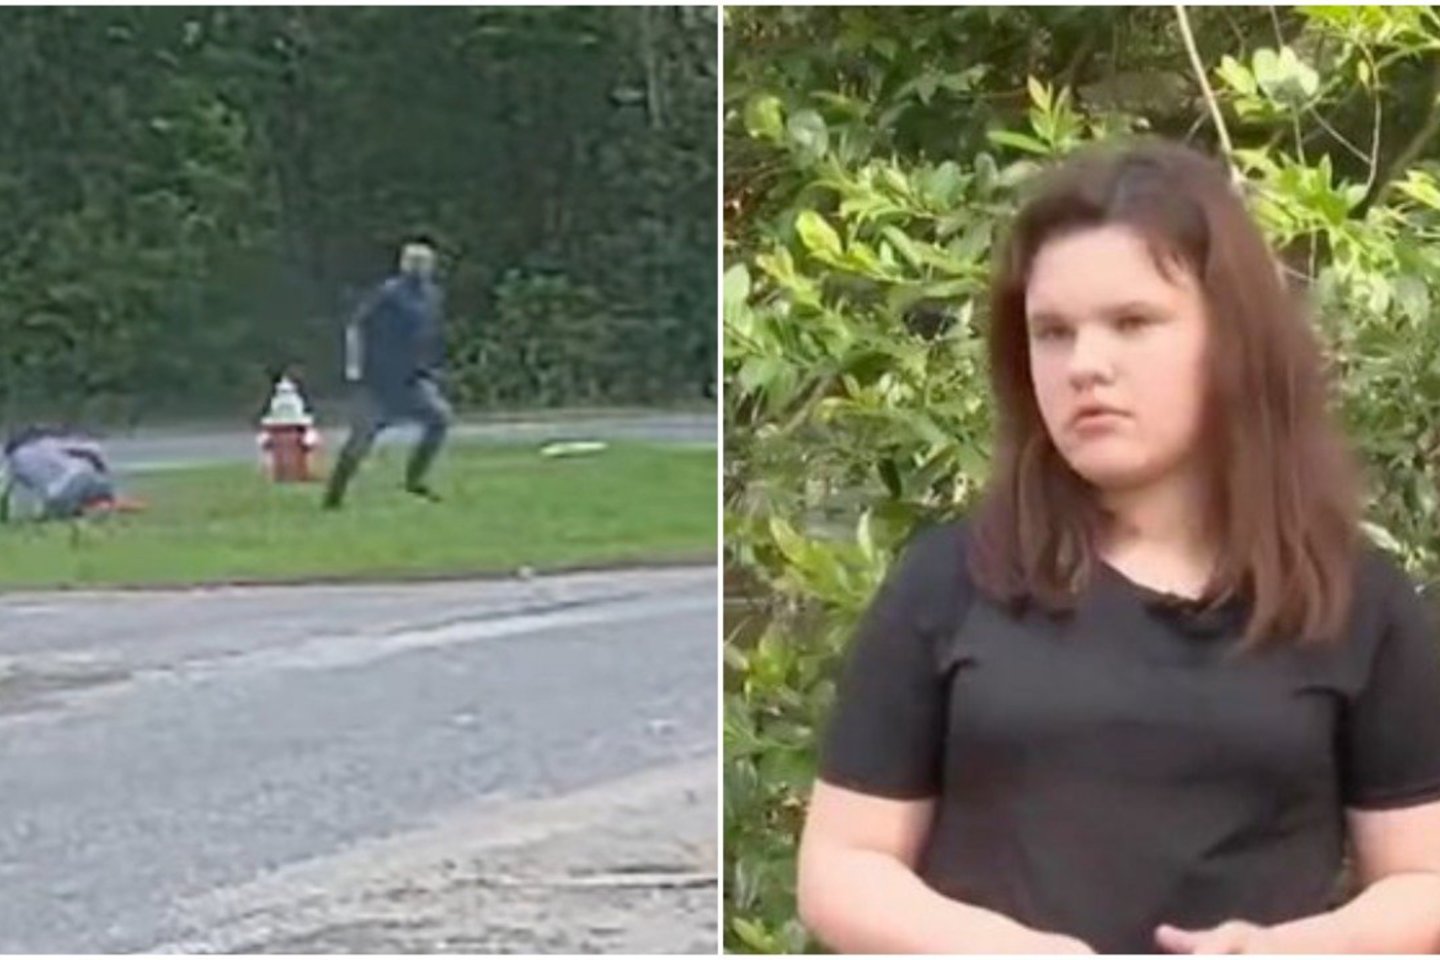  Floridoje vienuolikmetė mergaitė žaislinių mėlynų gleivių mase, su kuriomis žaidė,  ištepė bandžiusio ją pagrobti vyro rankas, kad policija galėtų jį atpažinti.<br> lrytas.lt koliažas.